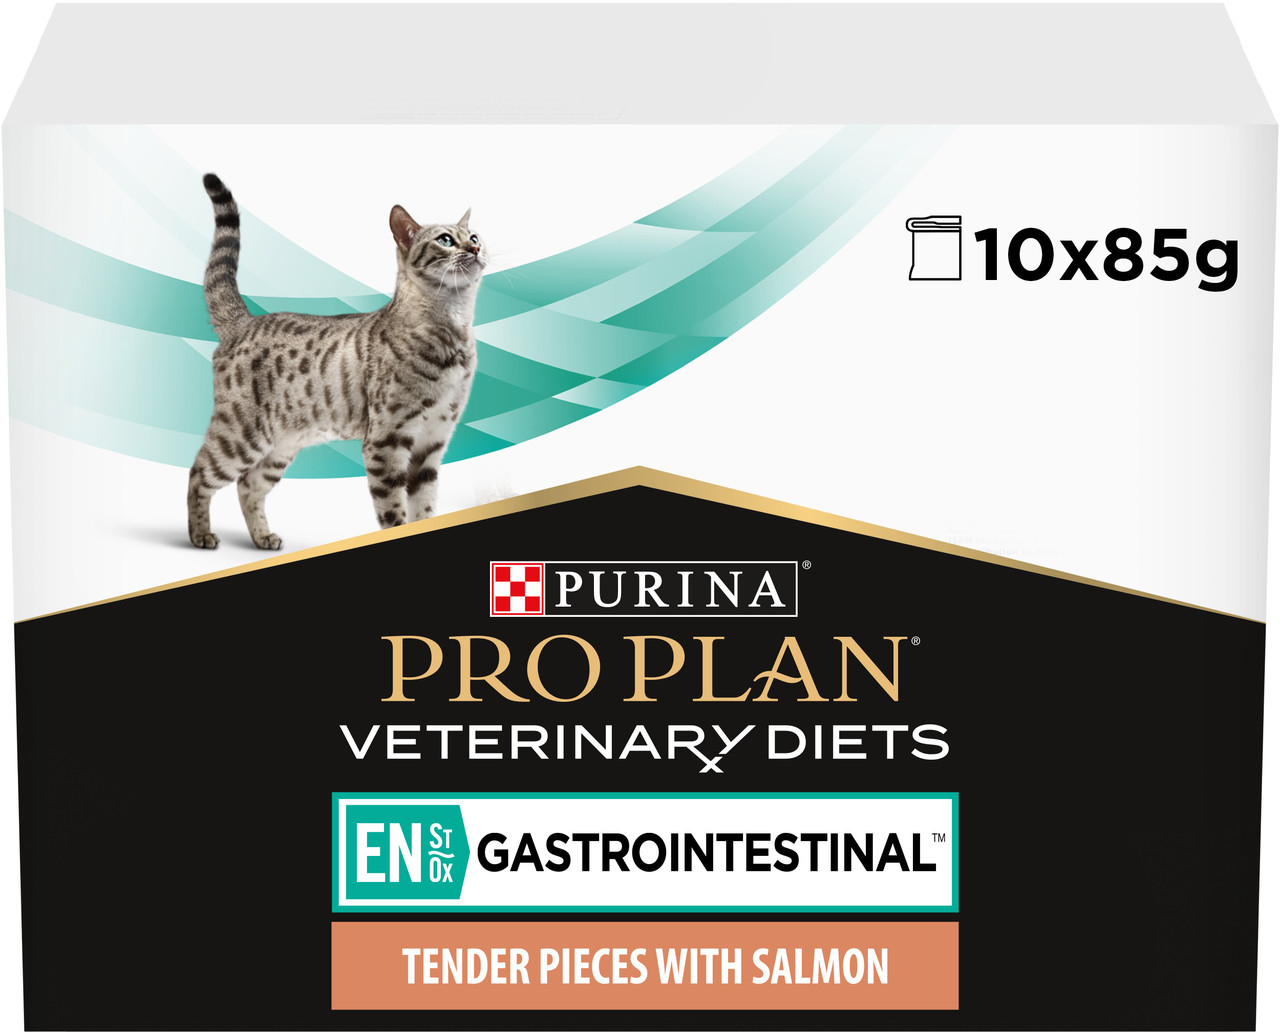 Упаковка вологого дієтичного корму для кошенят та дорослих котів Pro Plan Veterinary Diets EN Gastrointestinal для зменшення